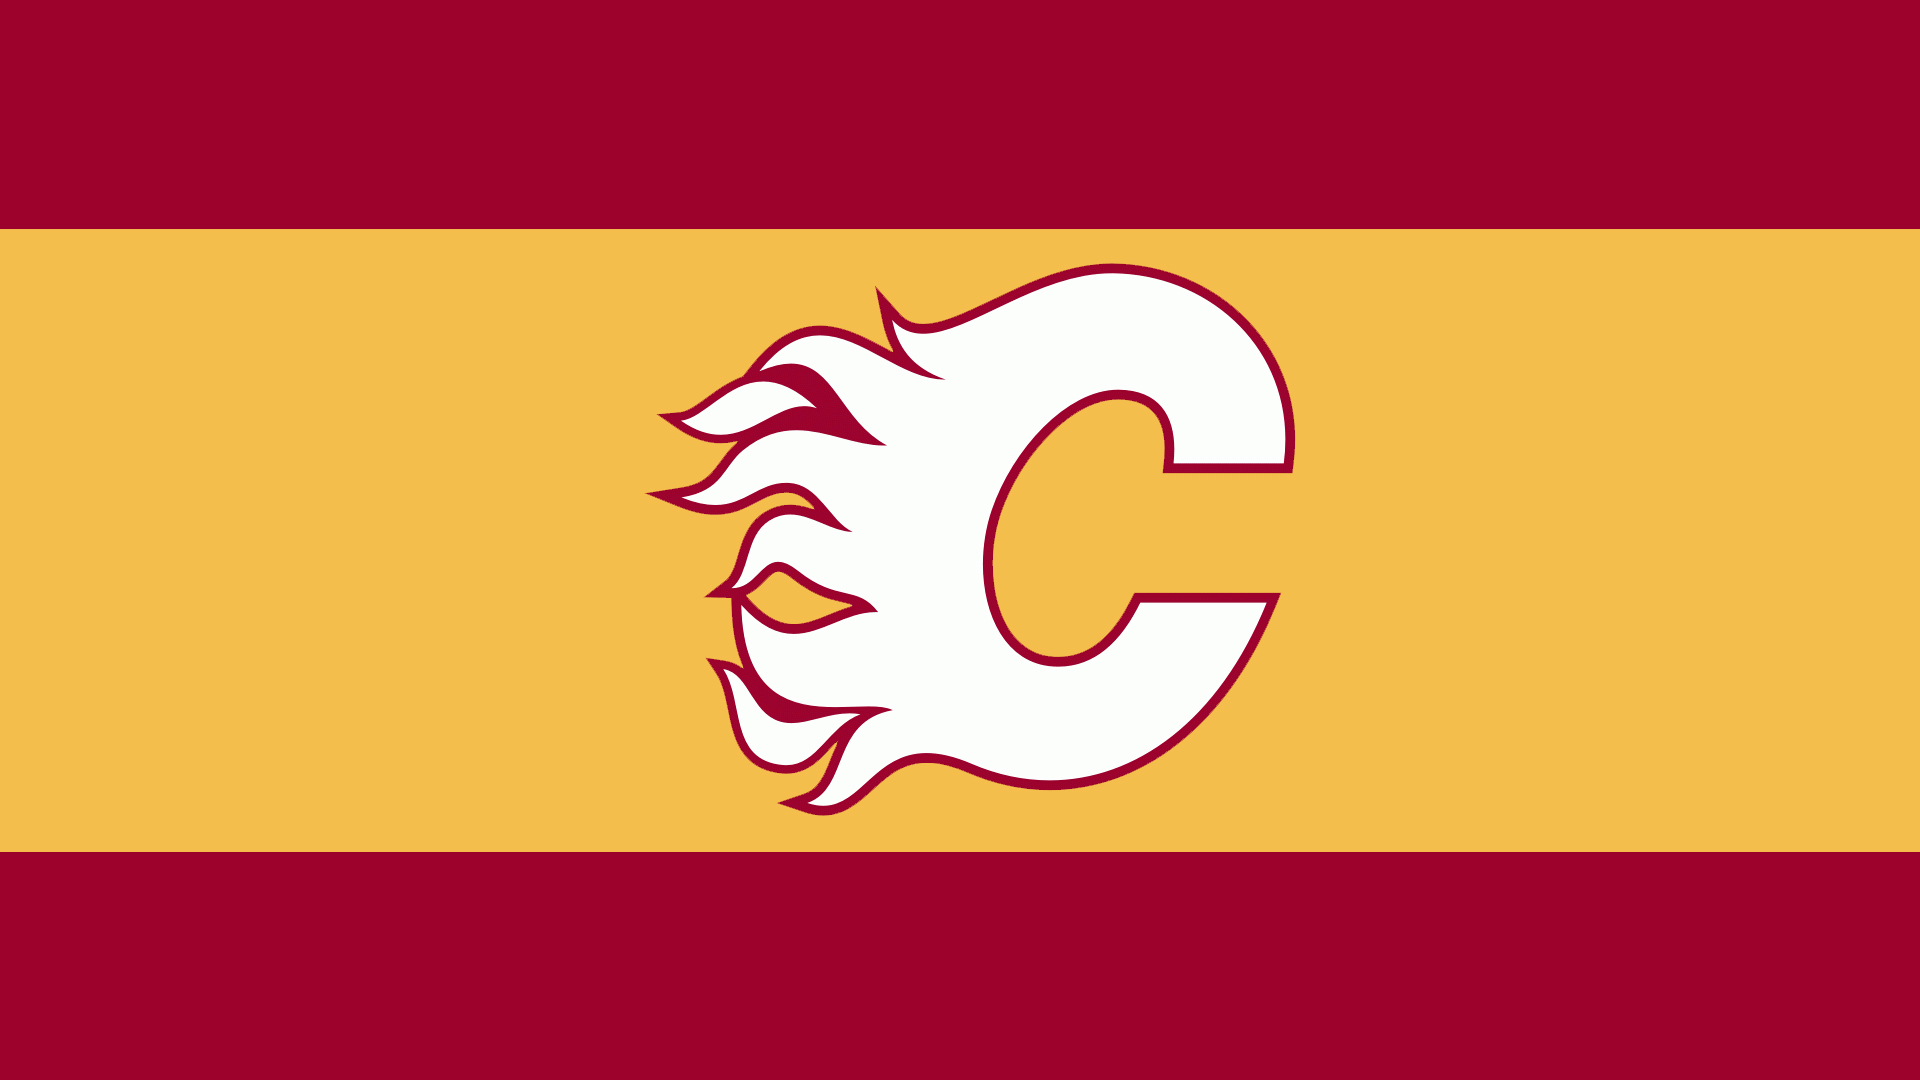 Calgary Flames 002 NHL, Hokej, Logo